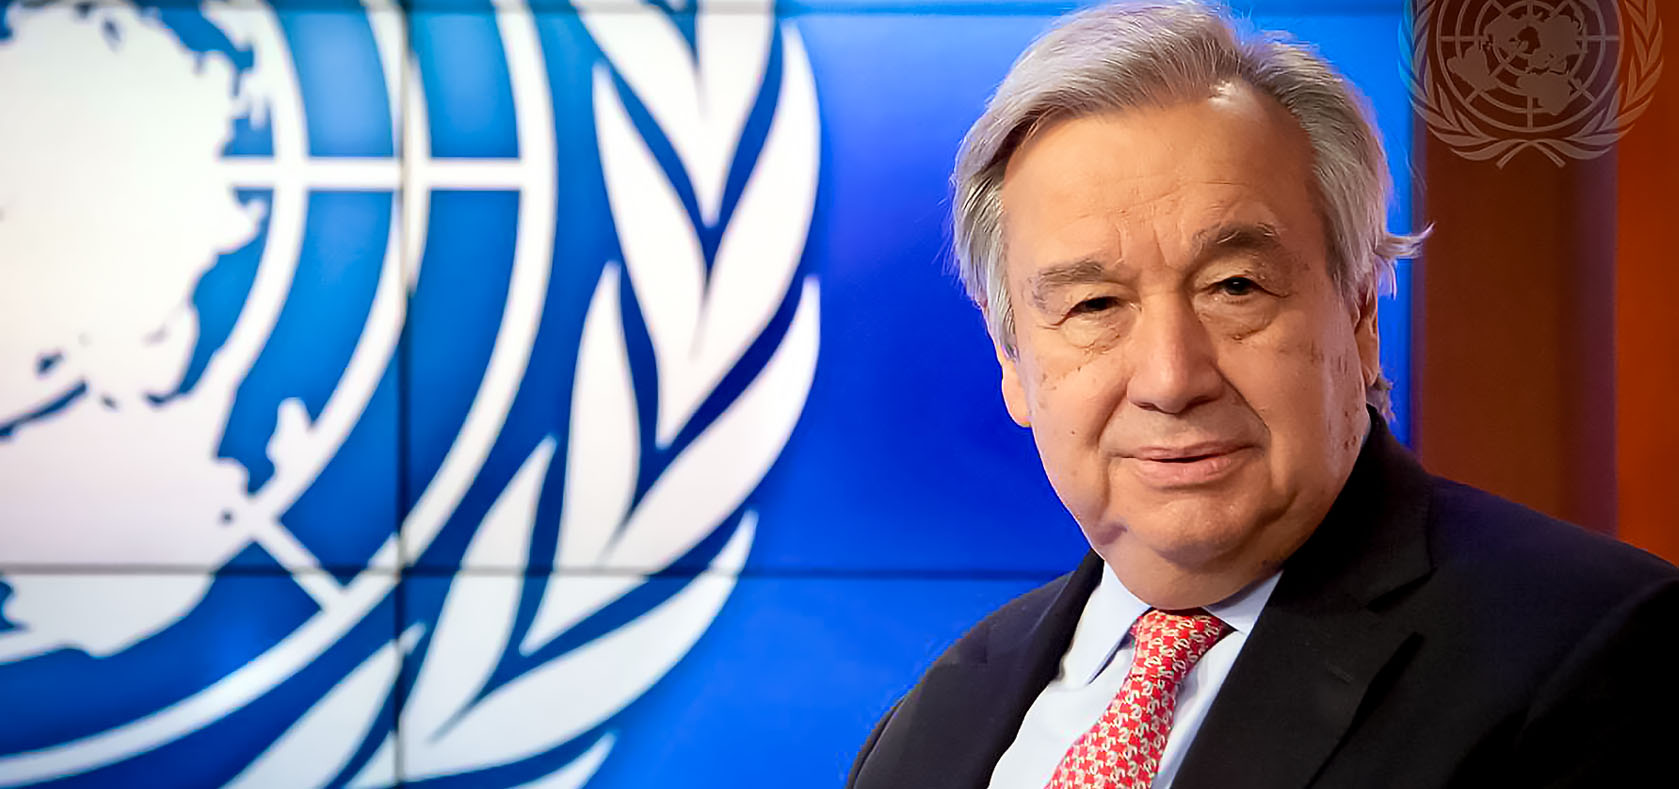 António Guterres, the UN Secretary-General, 2022. Photo: UN Photo/Eskinder Debebe